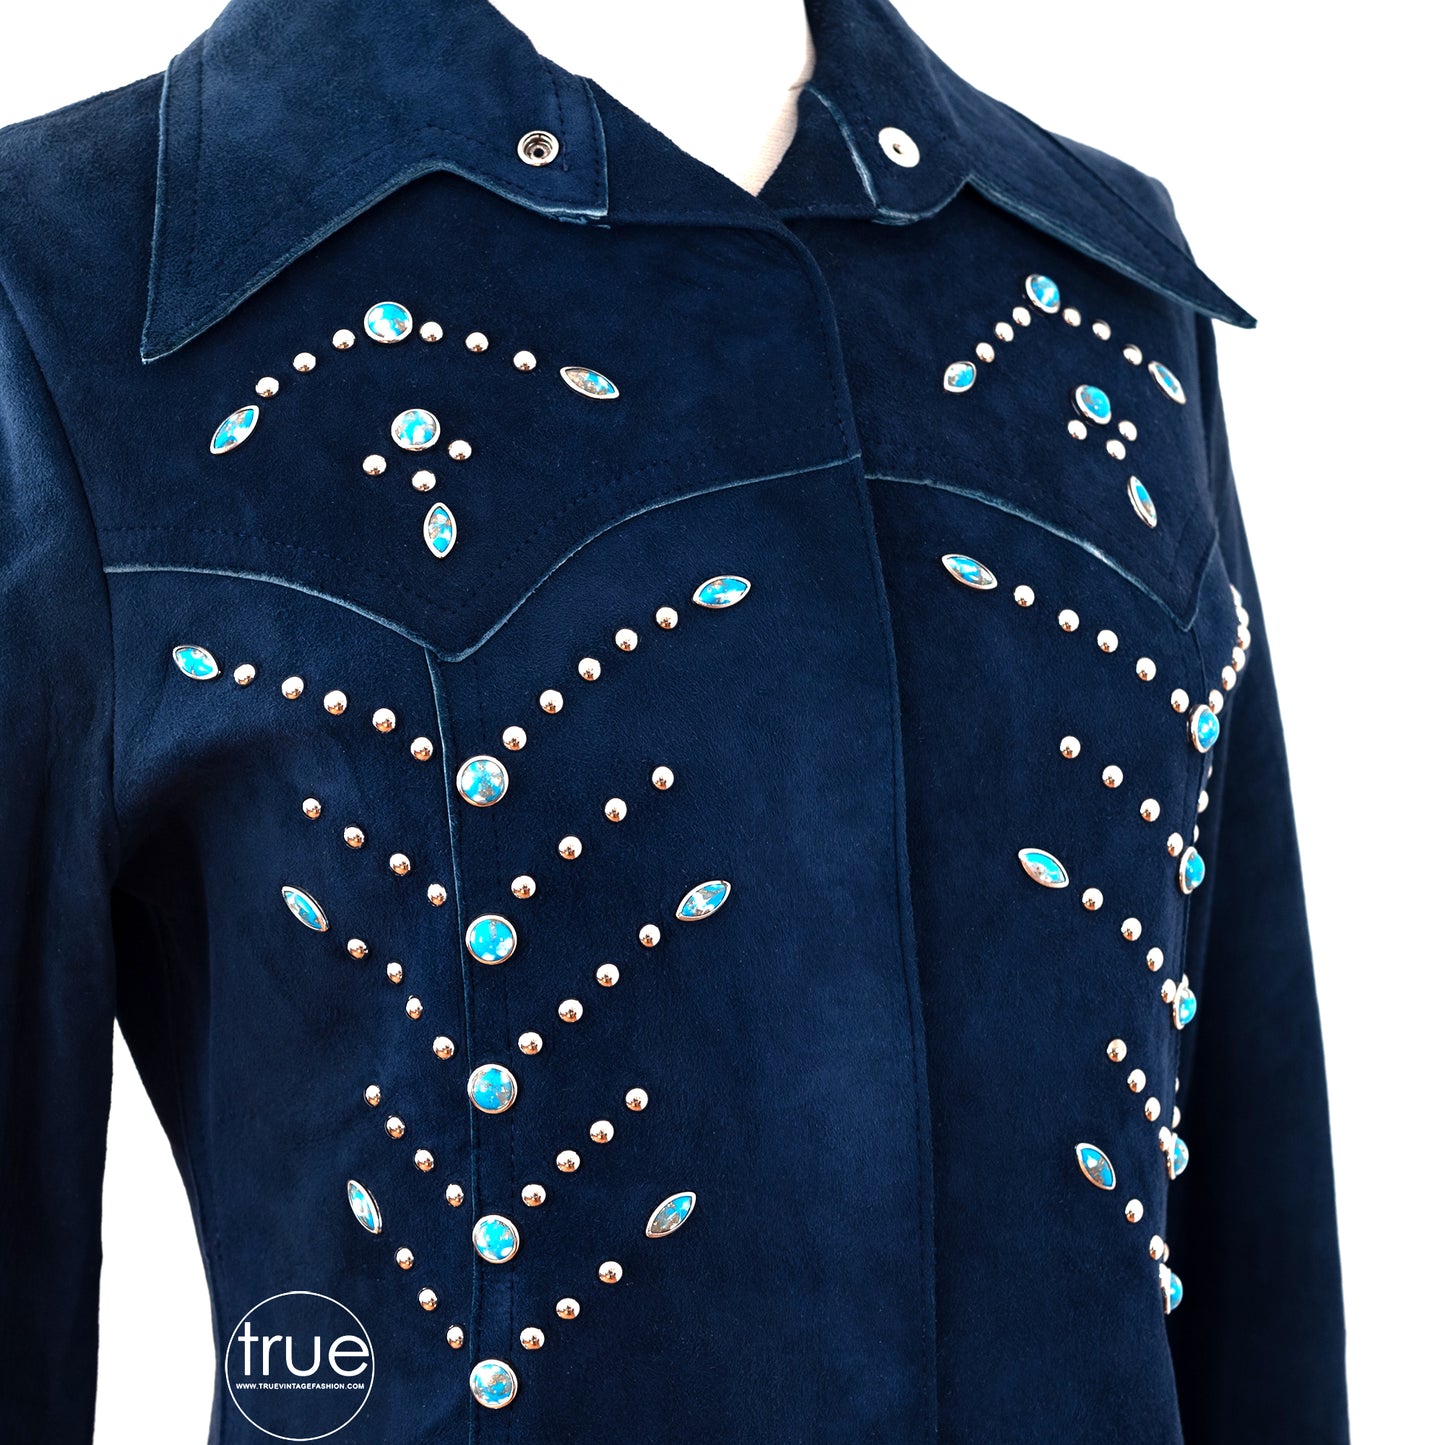 vintage 1970's suit ...designer Roger Kuper studded blue suede jacket & pants